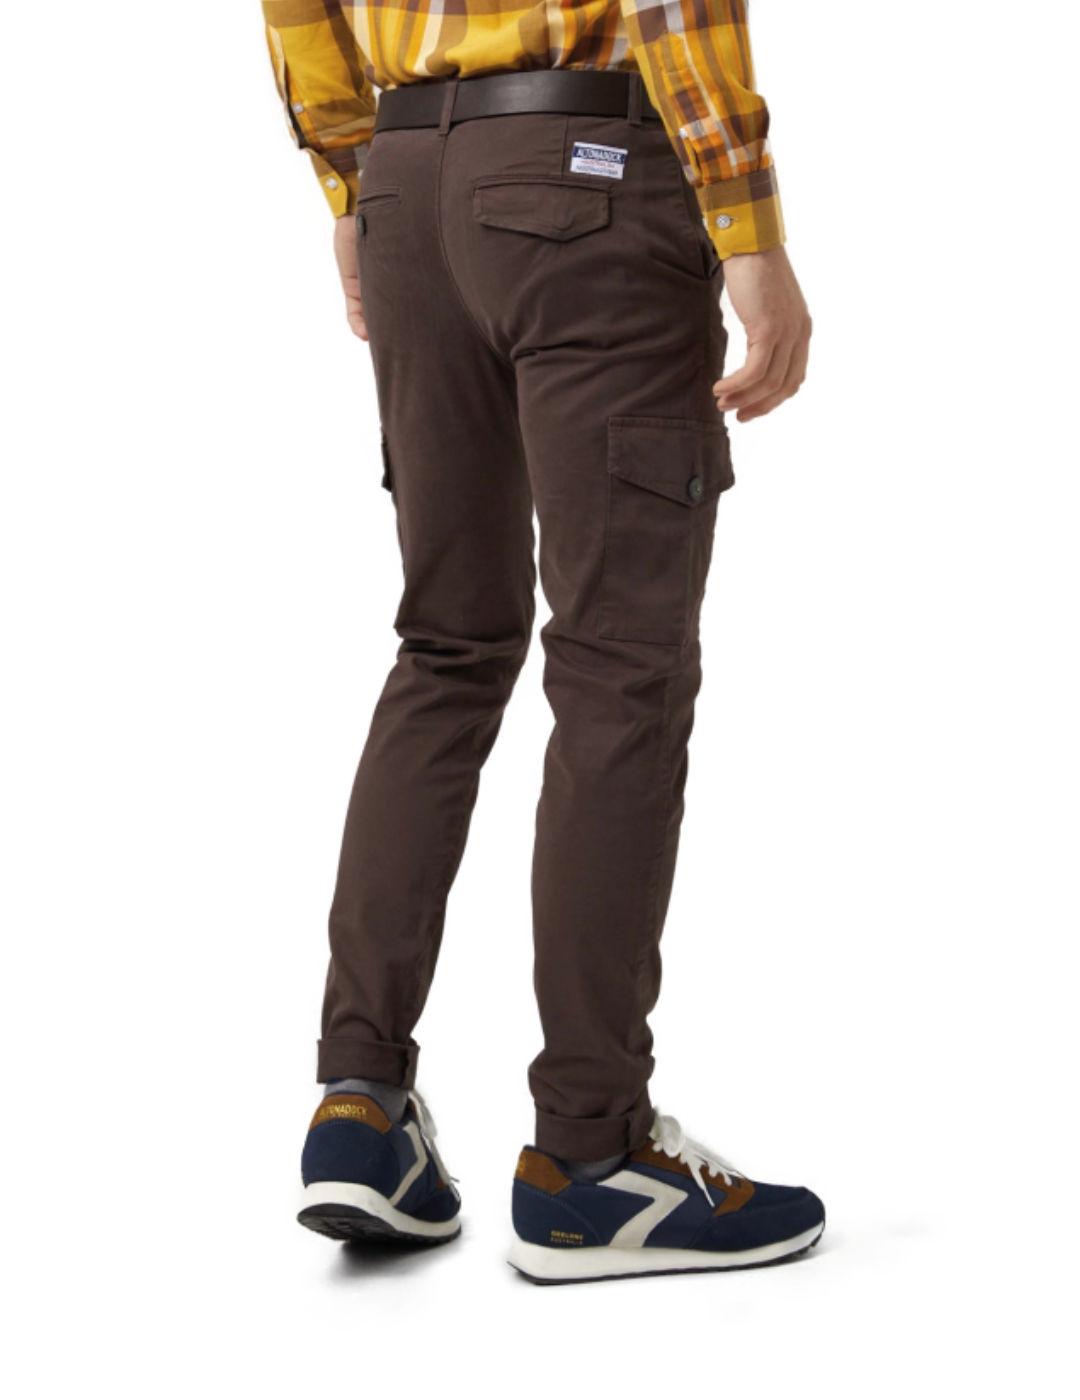 Pantalón Altonadock marrón para hombre -b